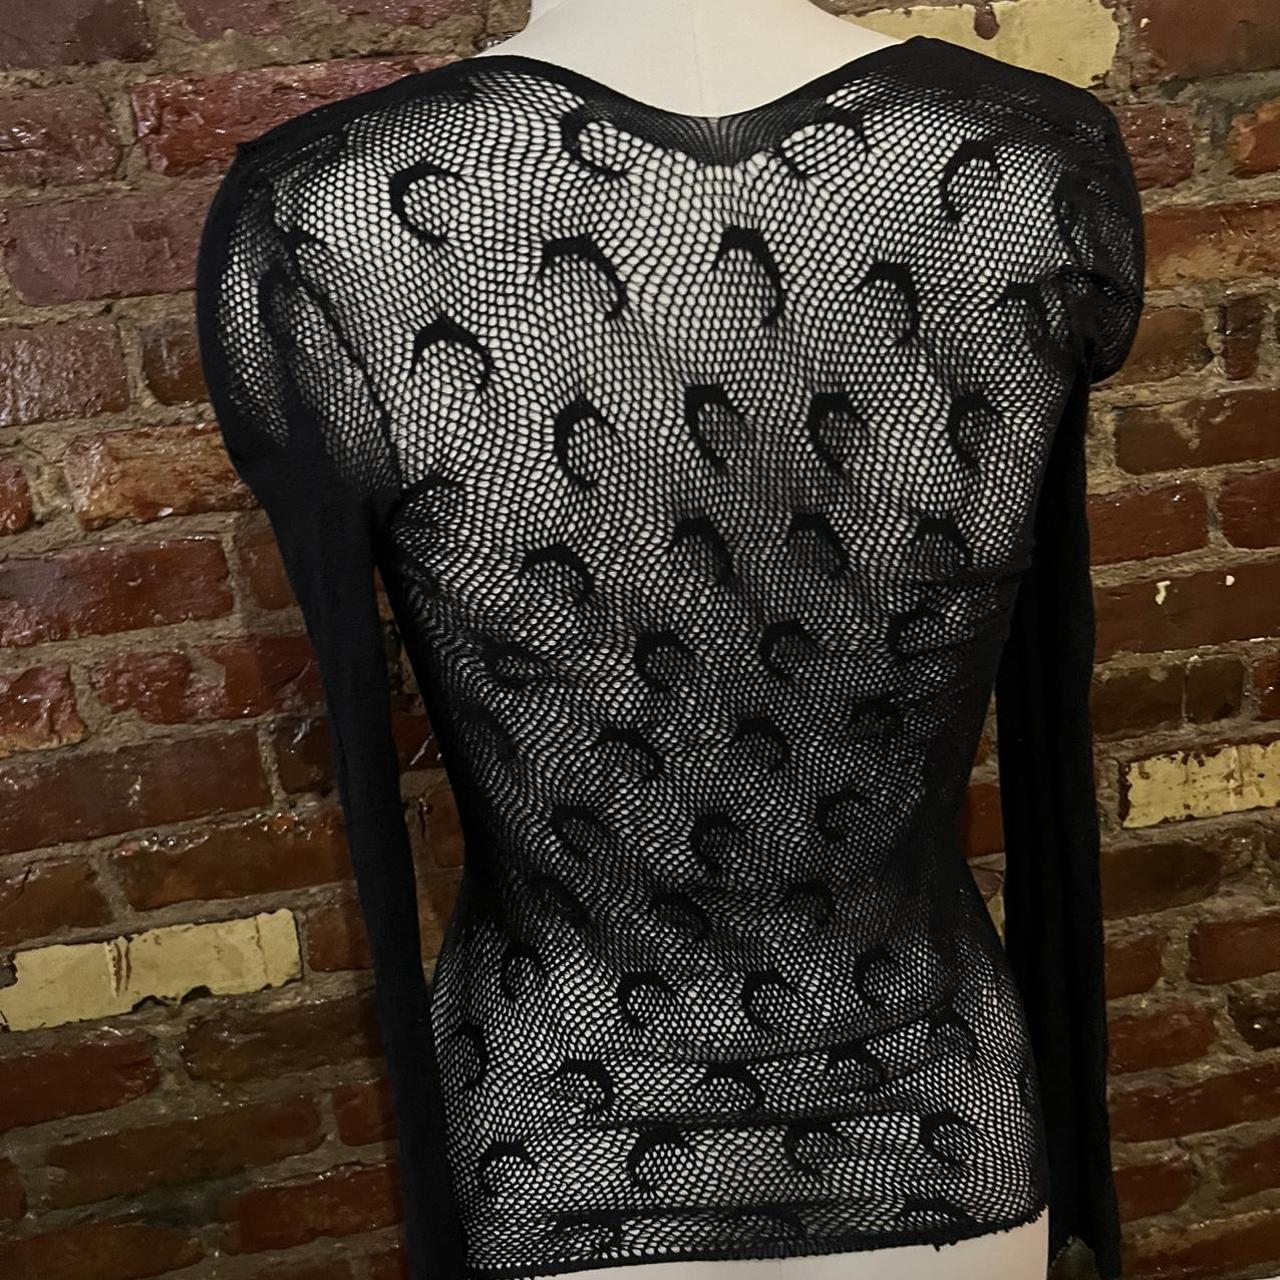 Product Image 2 - marine serre fishnet shirt only